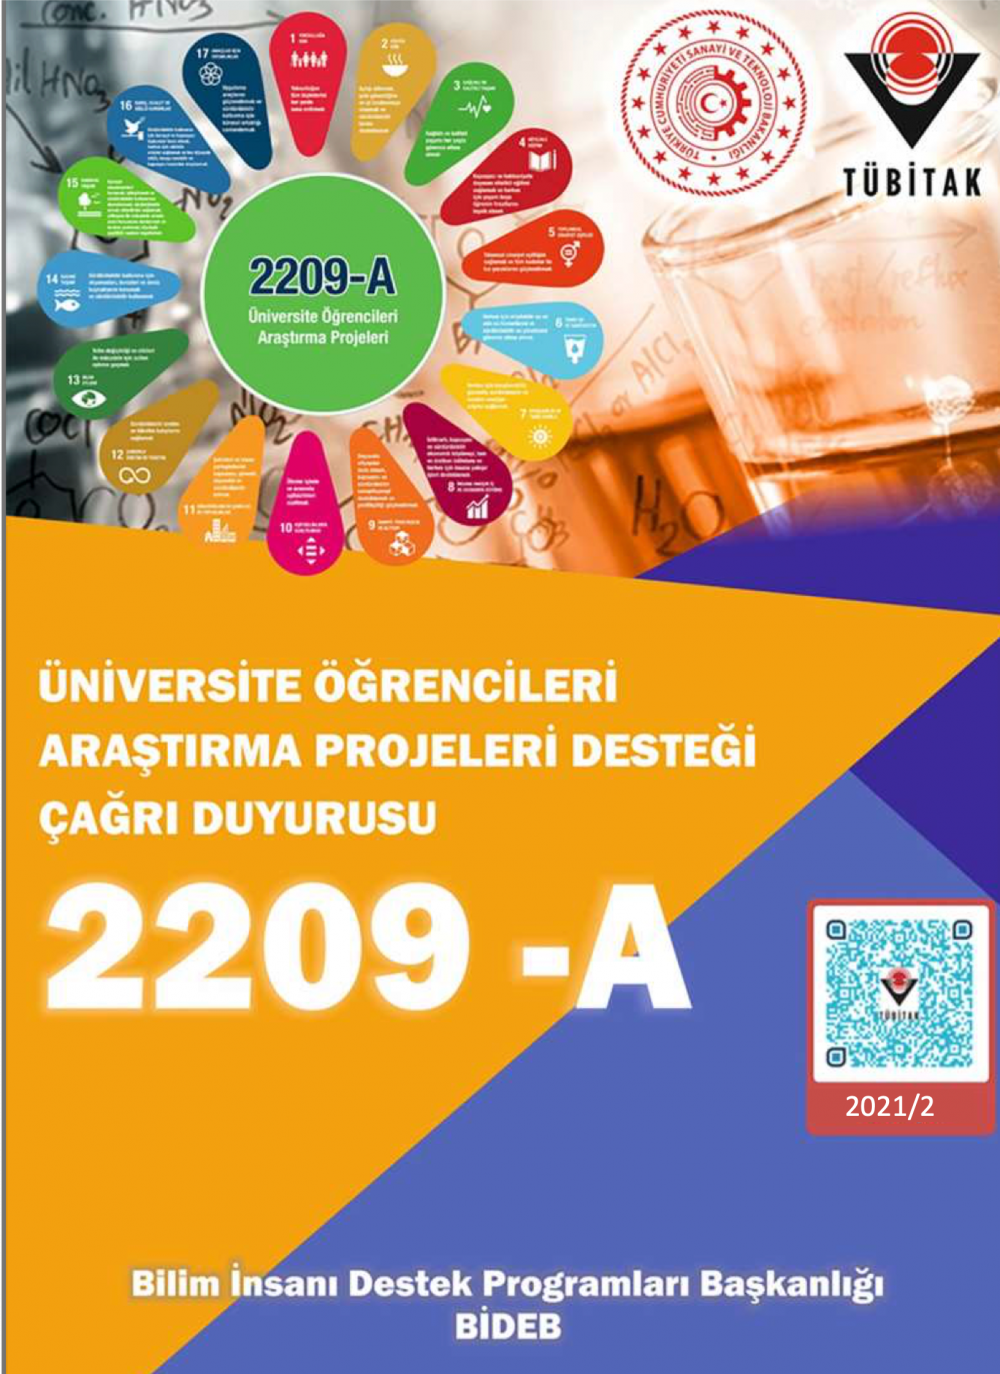 TÜBİTAK 2209-A Üniversite Öğrencileri Araştırma Projeleri Destekleme Programı 2021/2. Dönem Destek Hakkı Kazanan Proje